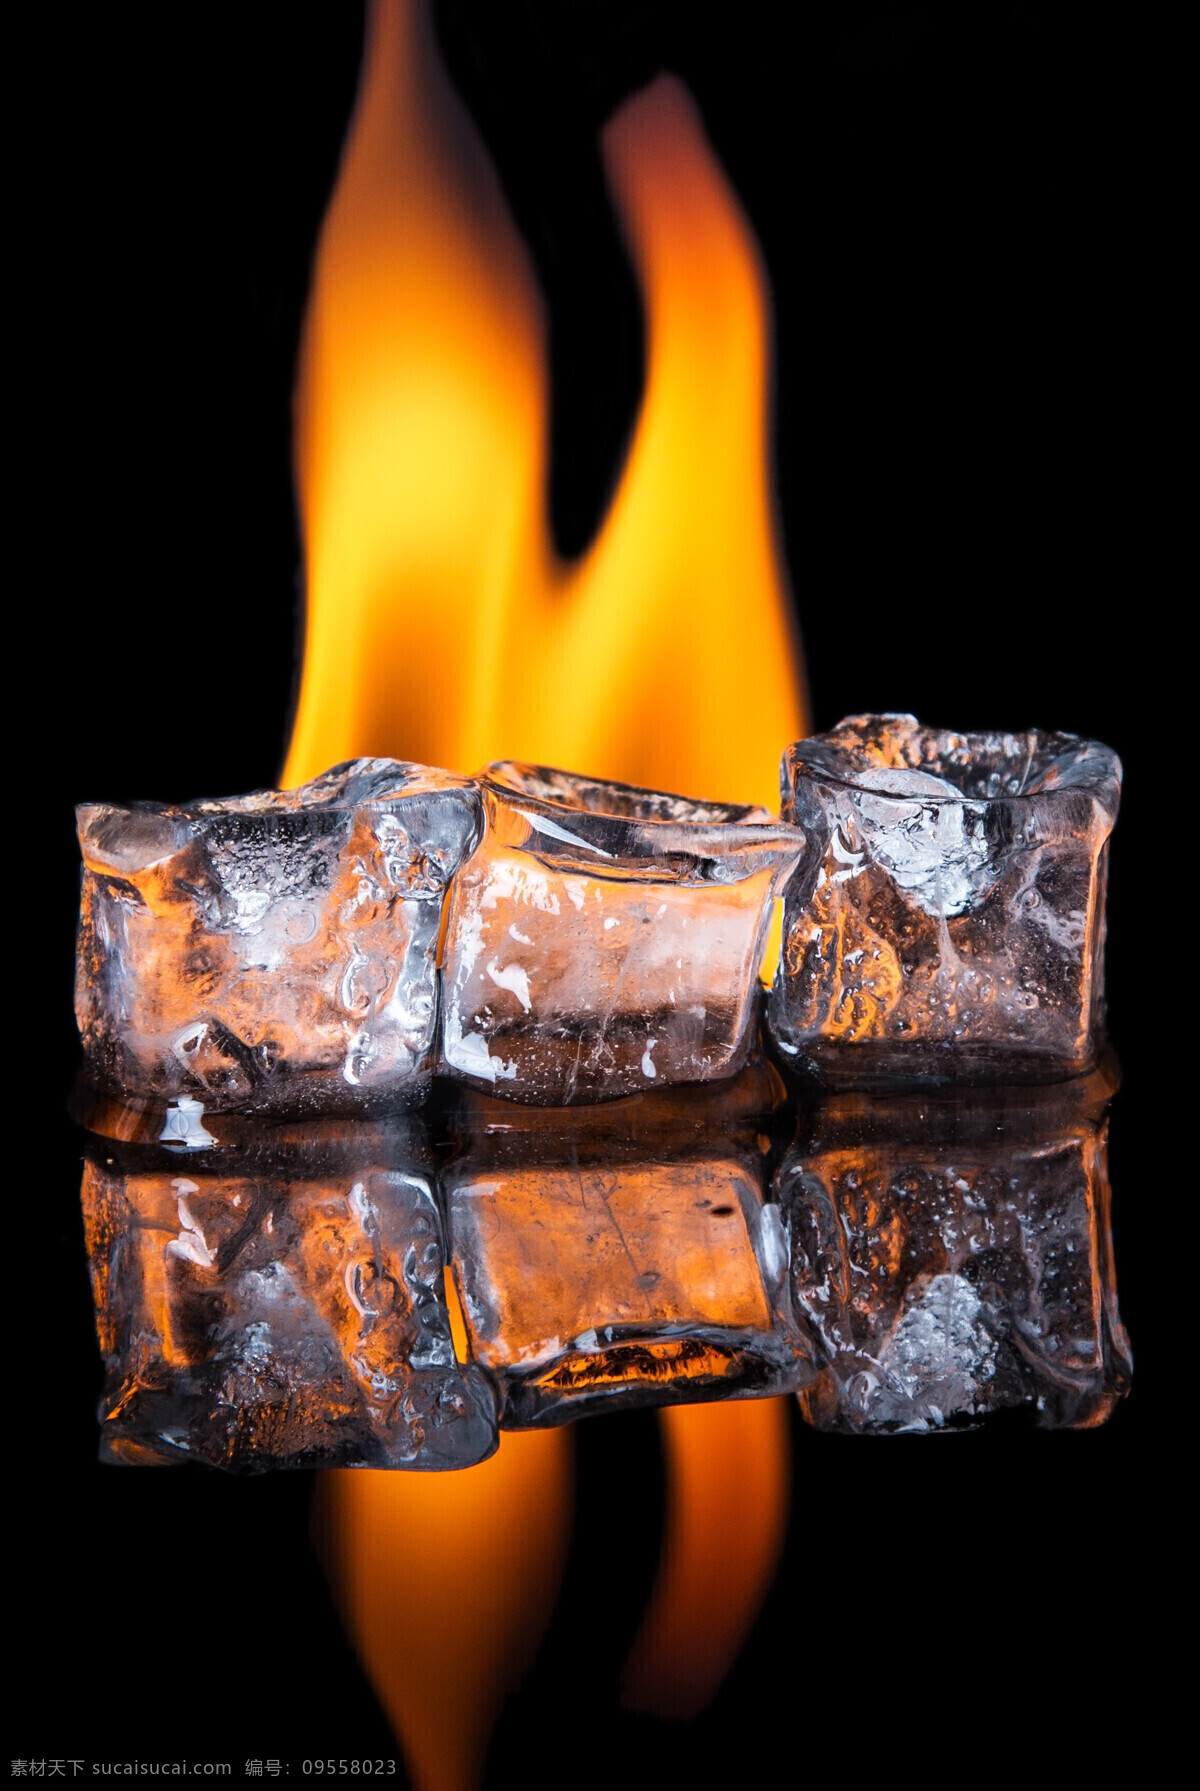 火焰 背景 冰块 火焰背景 冰 冰块摄影 冰水烈火 生活百科 黑色